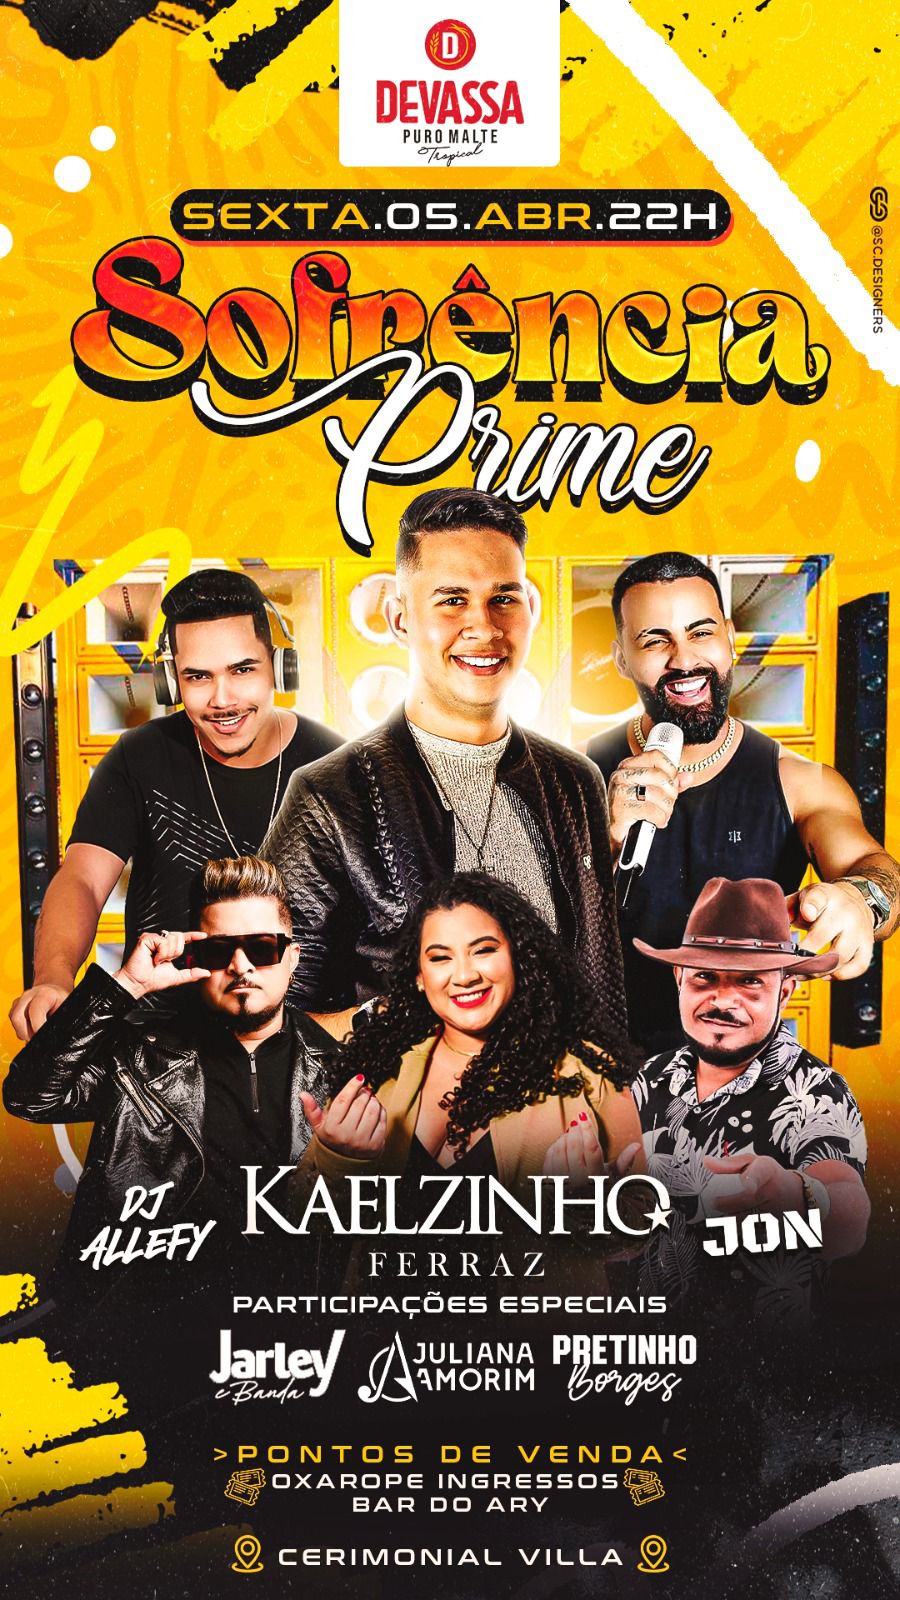 Kaelzinho Ferraz se apresenta nesta sexta na Sofrência Prime em Eunápolis 10